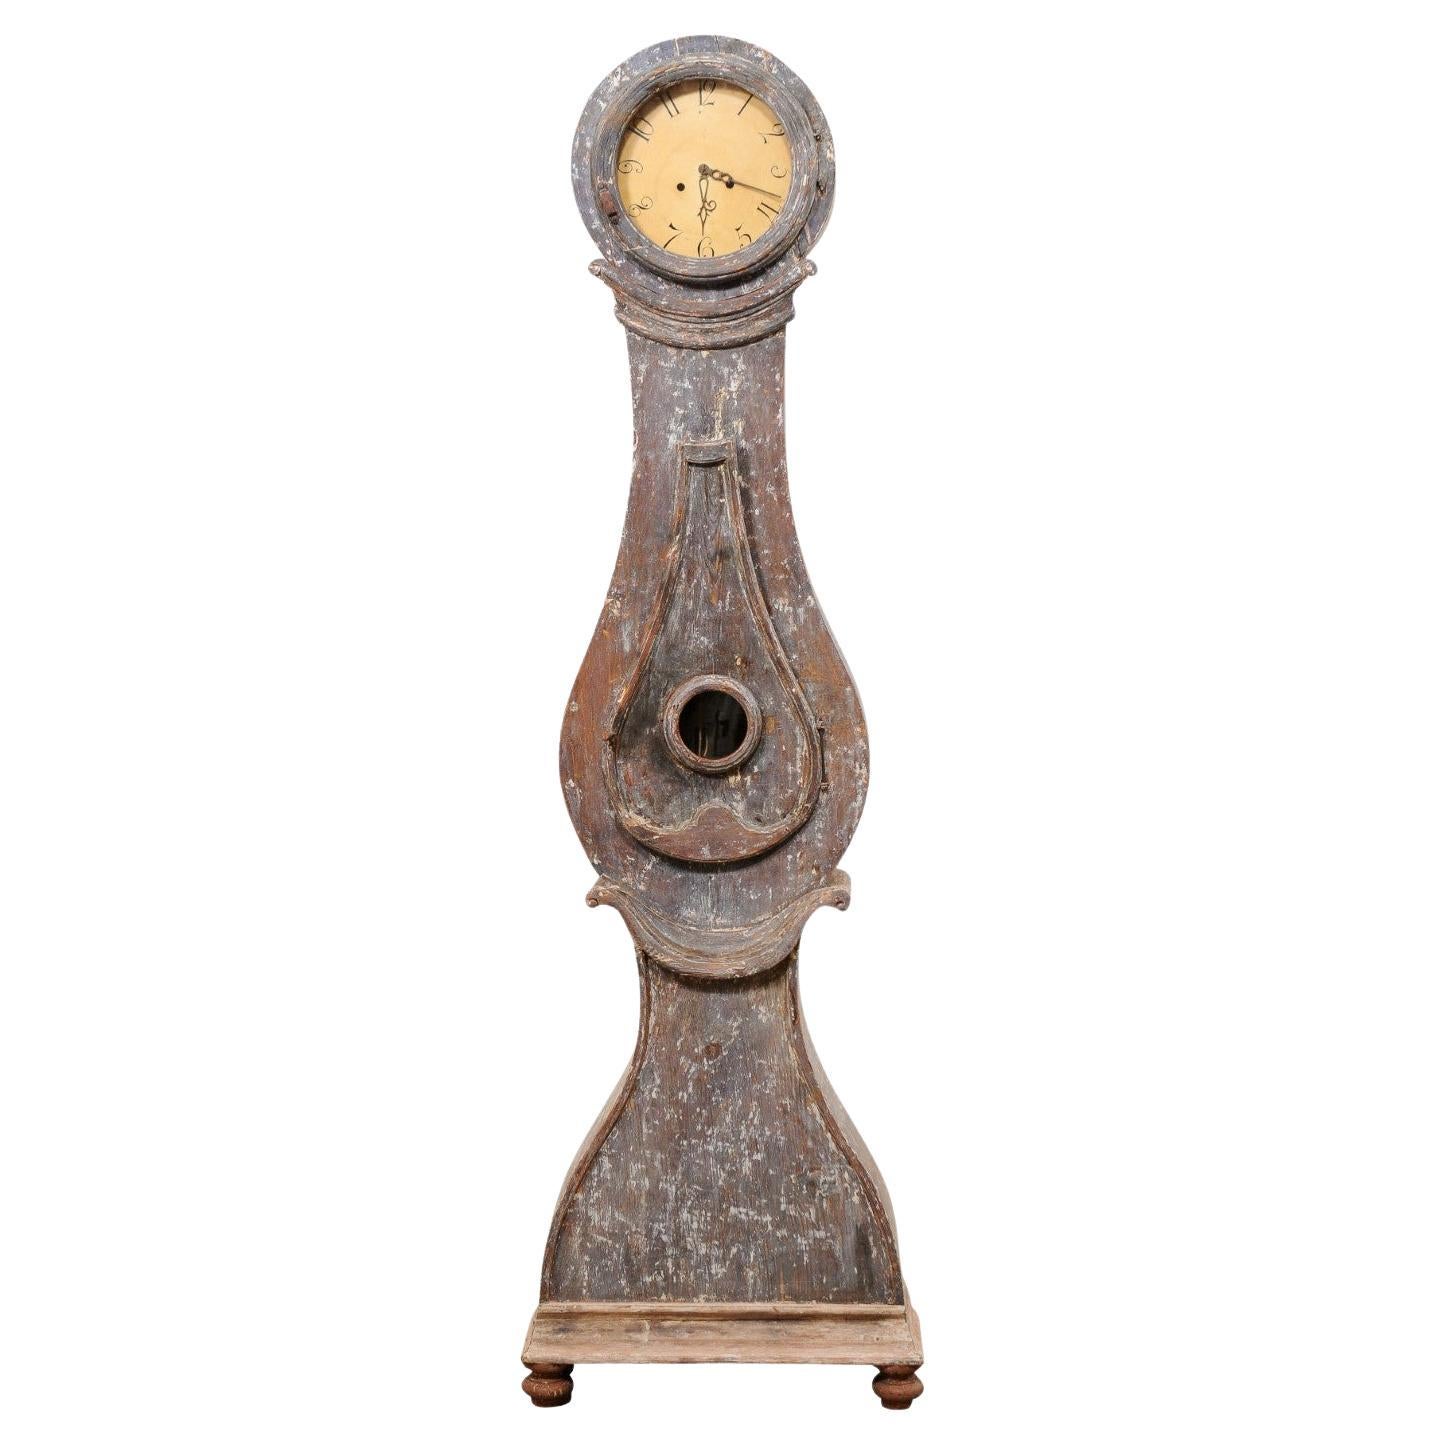 Schwedische Bodenuhr von Fryksdahl aus dem 19. Jahrhundert mit Original-Metallgehäuse und Uhrwerken